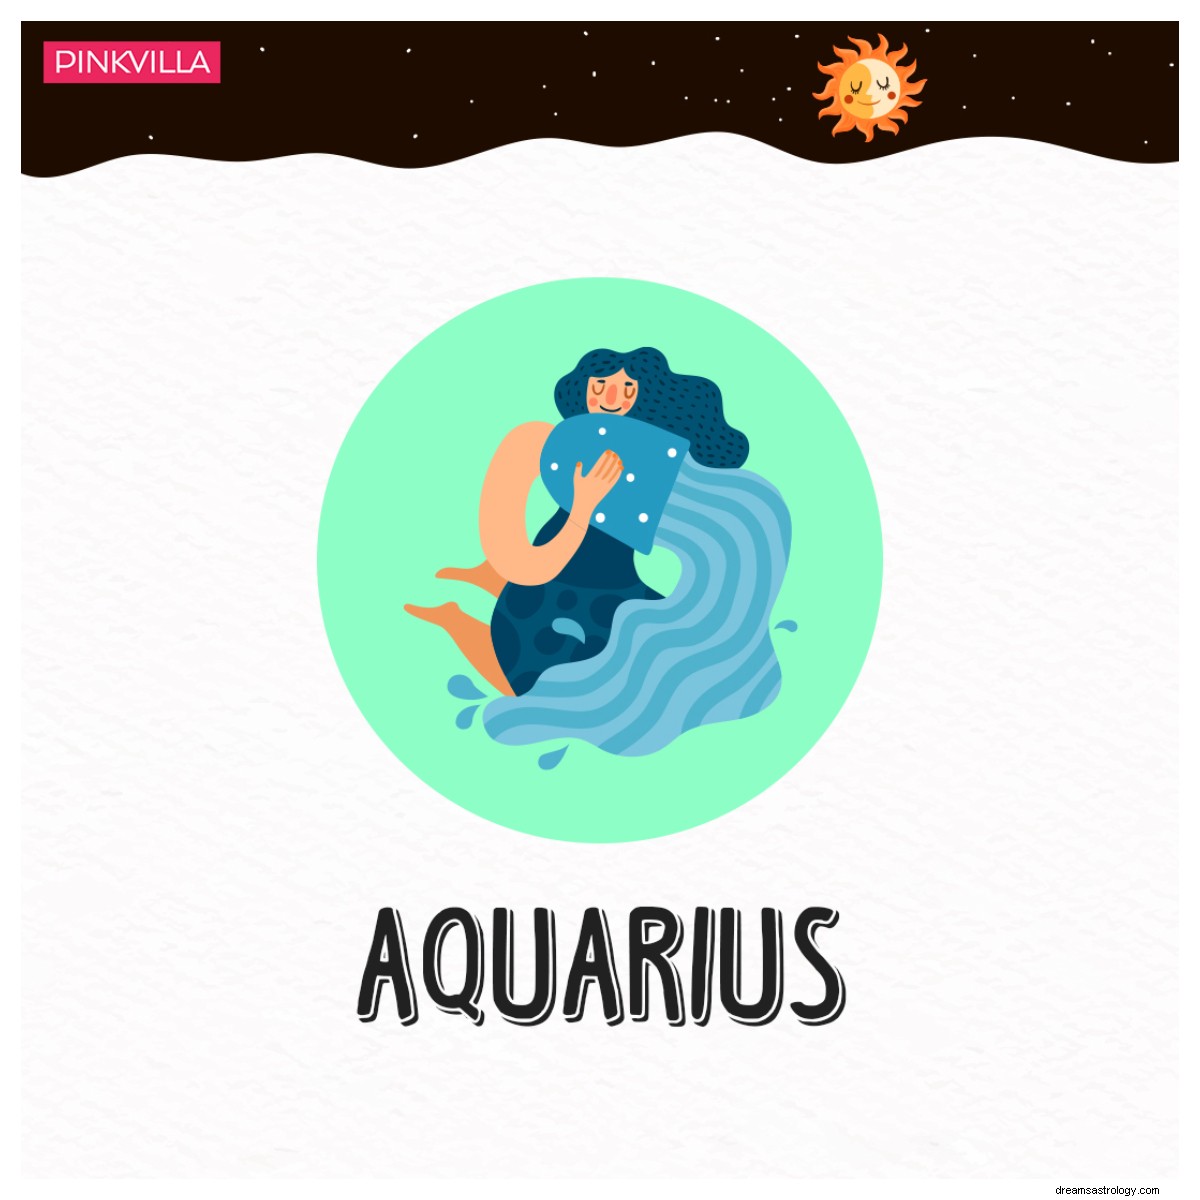 Géminis a Acuario:4 signos del zodiaco que son los mejores compañeros de viaje para viajes de aventura 